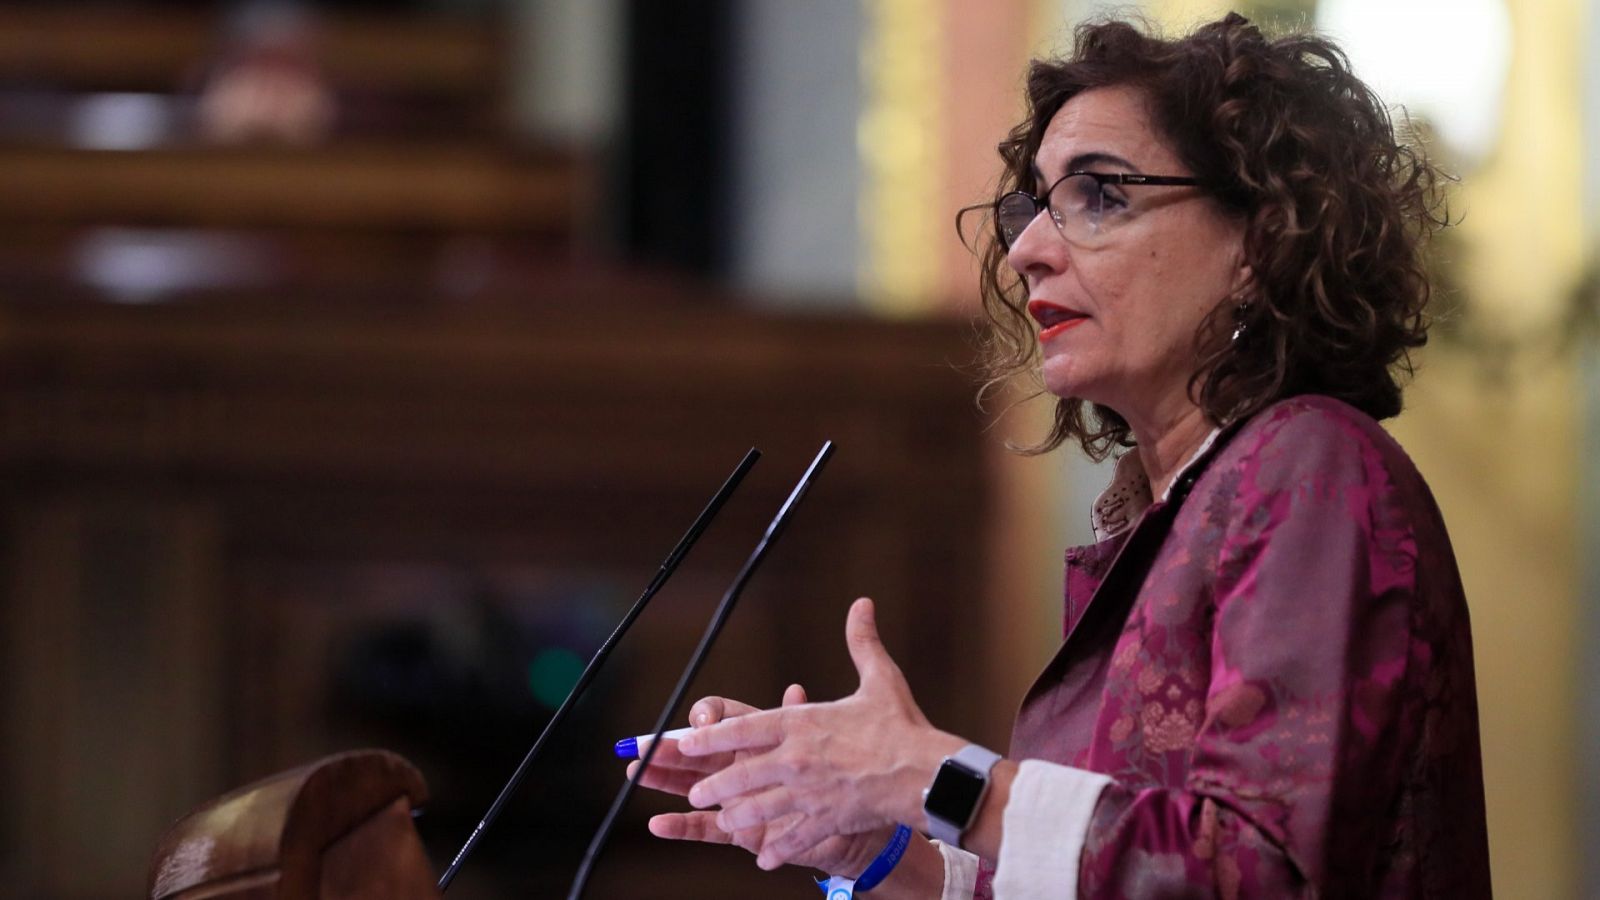 La ministra de Hacienda, María Jesús Montero